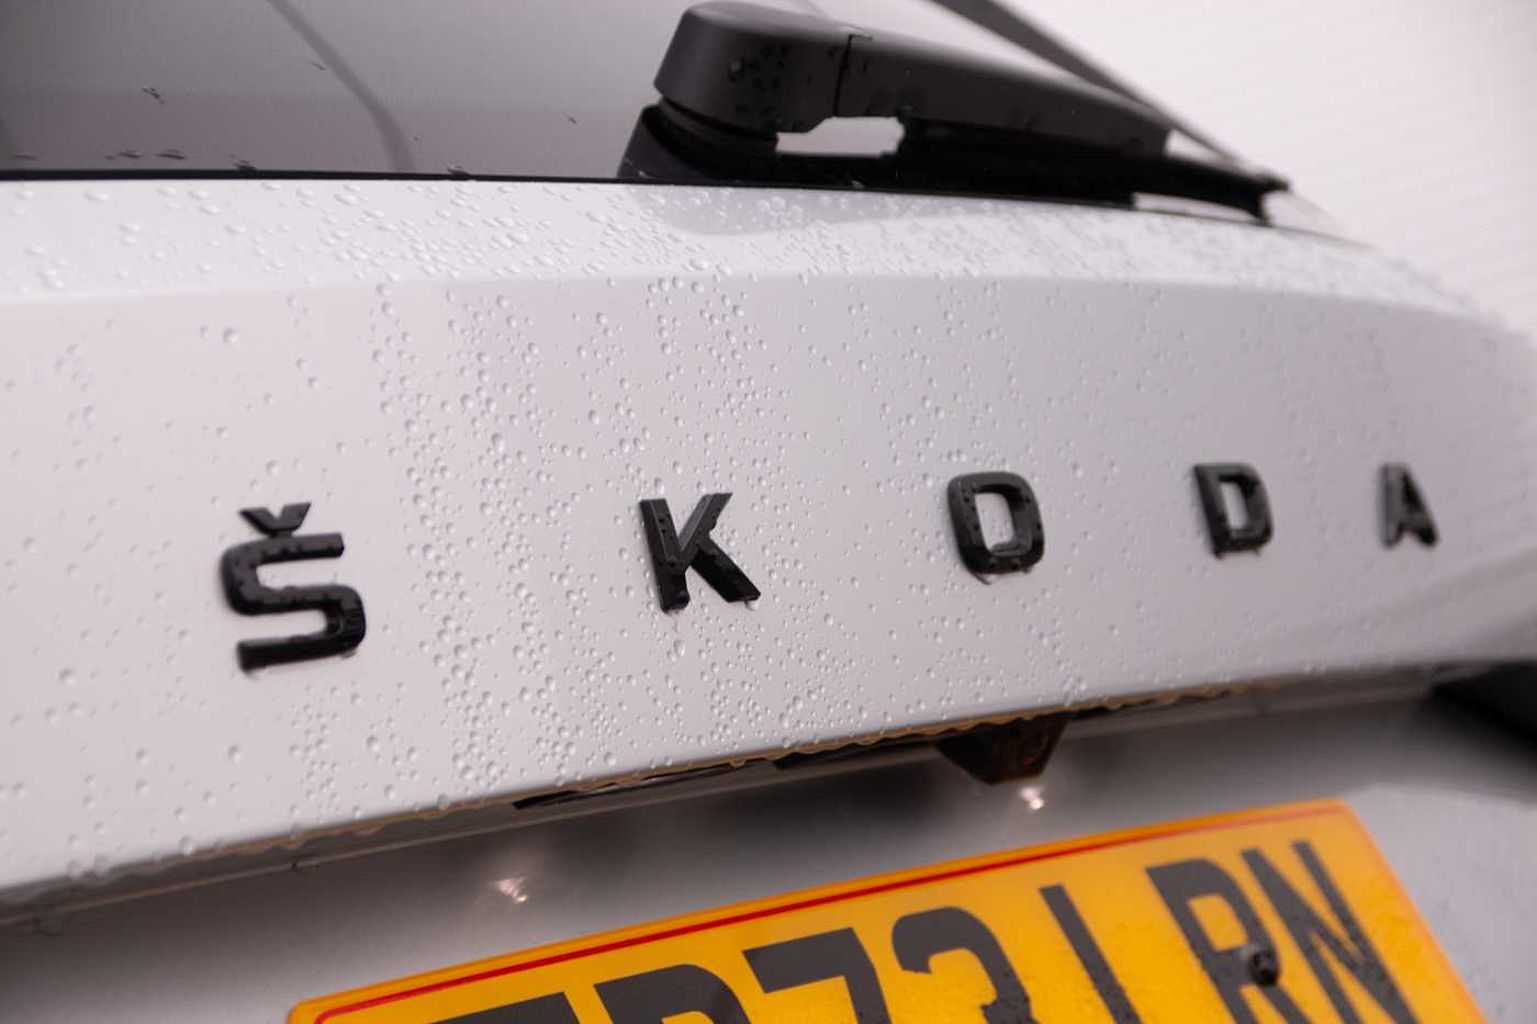 SKODA Kodiaq 2.0TDI (200ps) Sportline (7 seats) SCR DSG 4WD